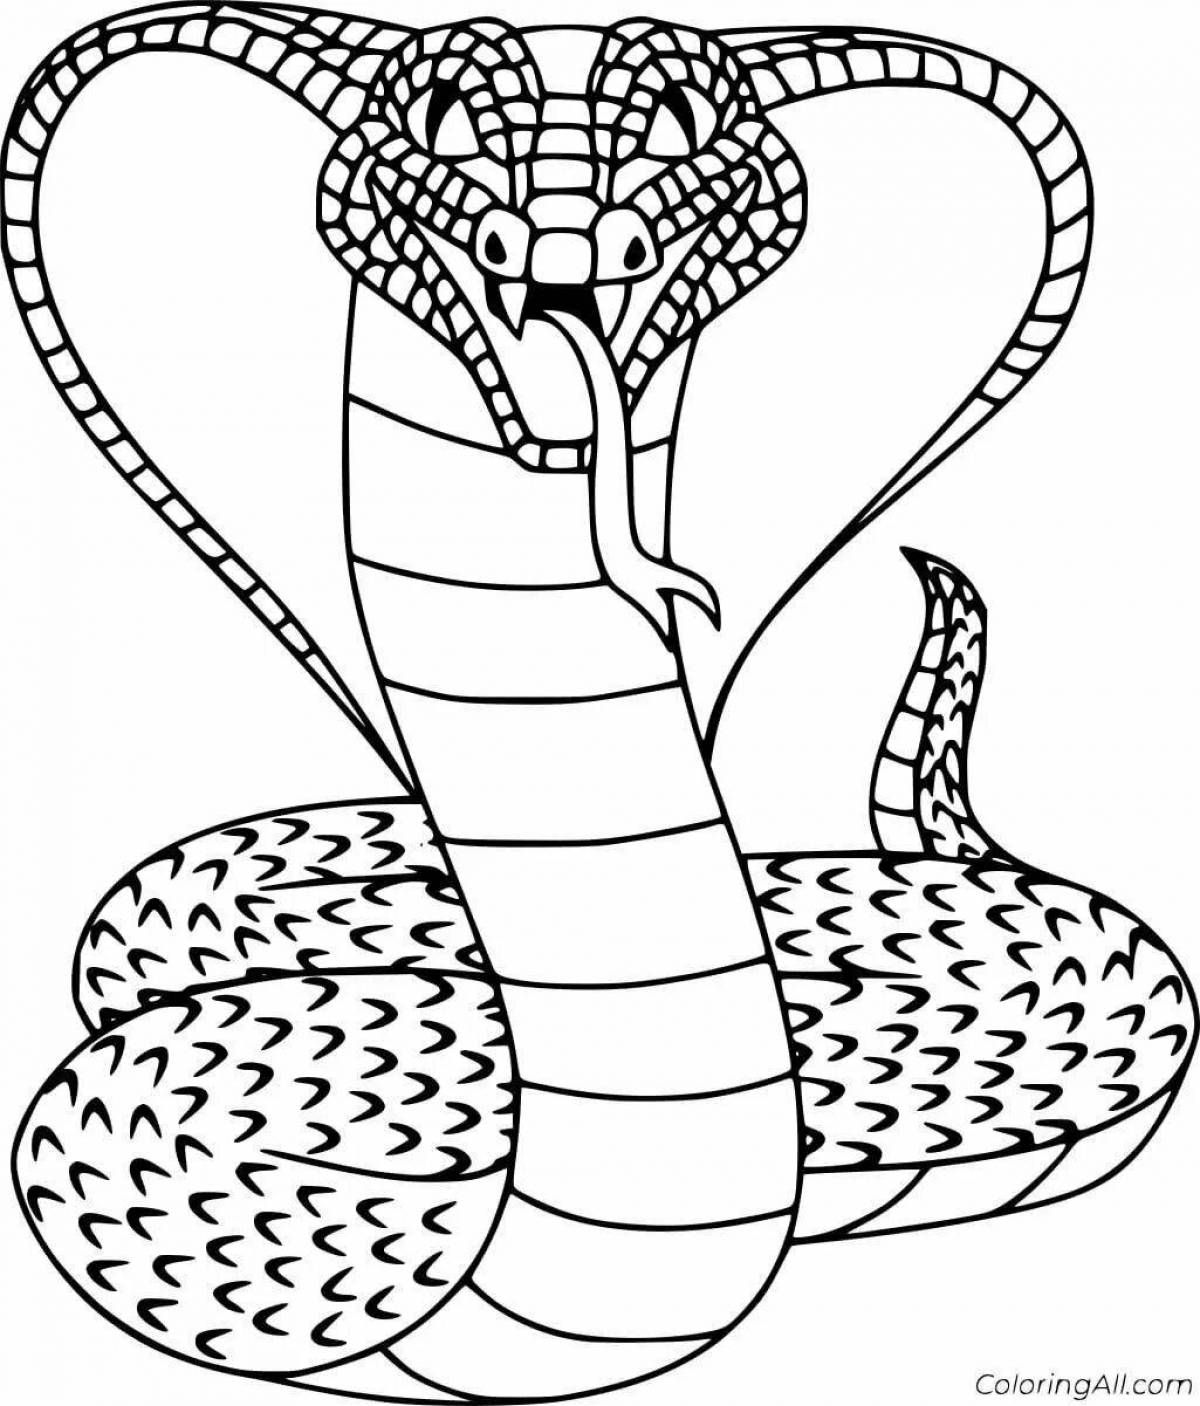 Яркая раскраска змеи для детей 5-6 лет